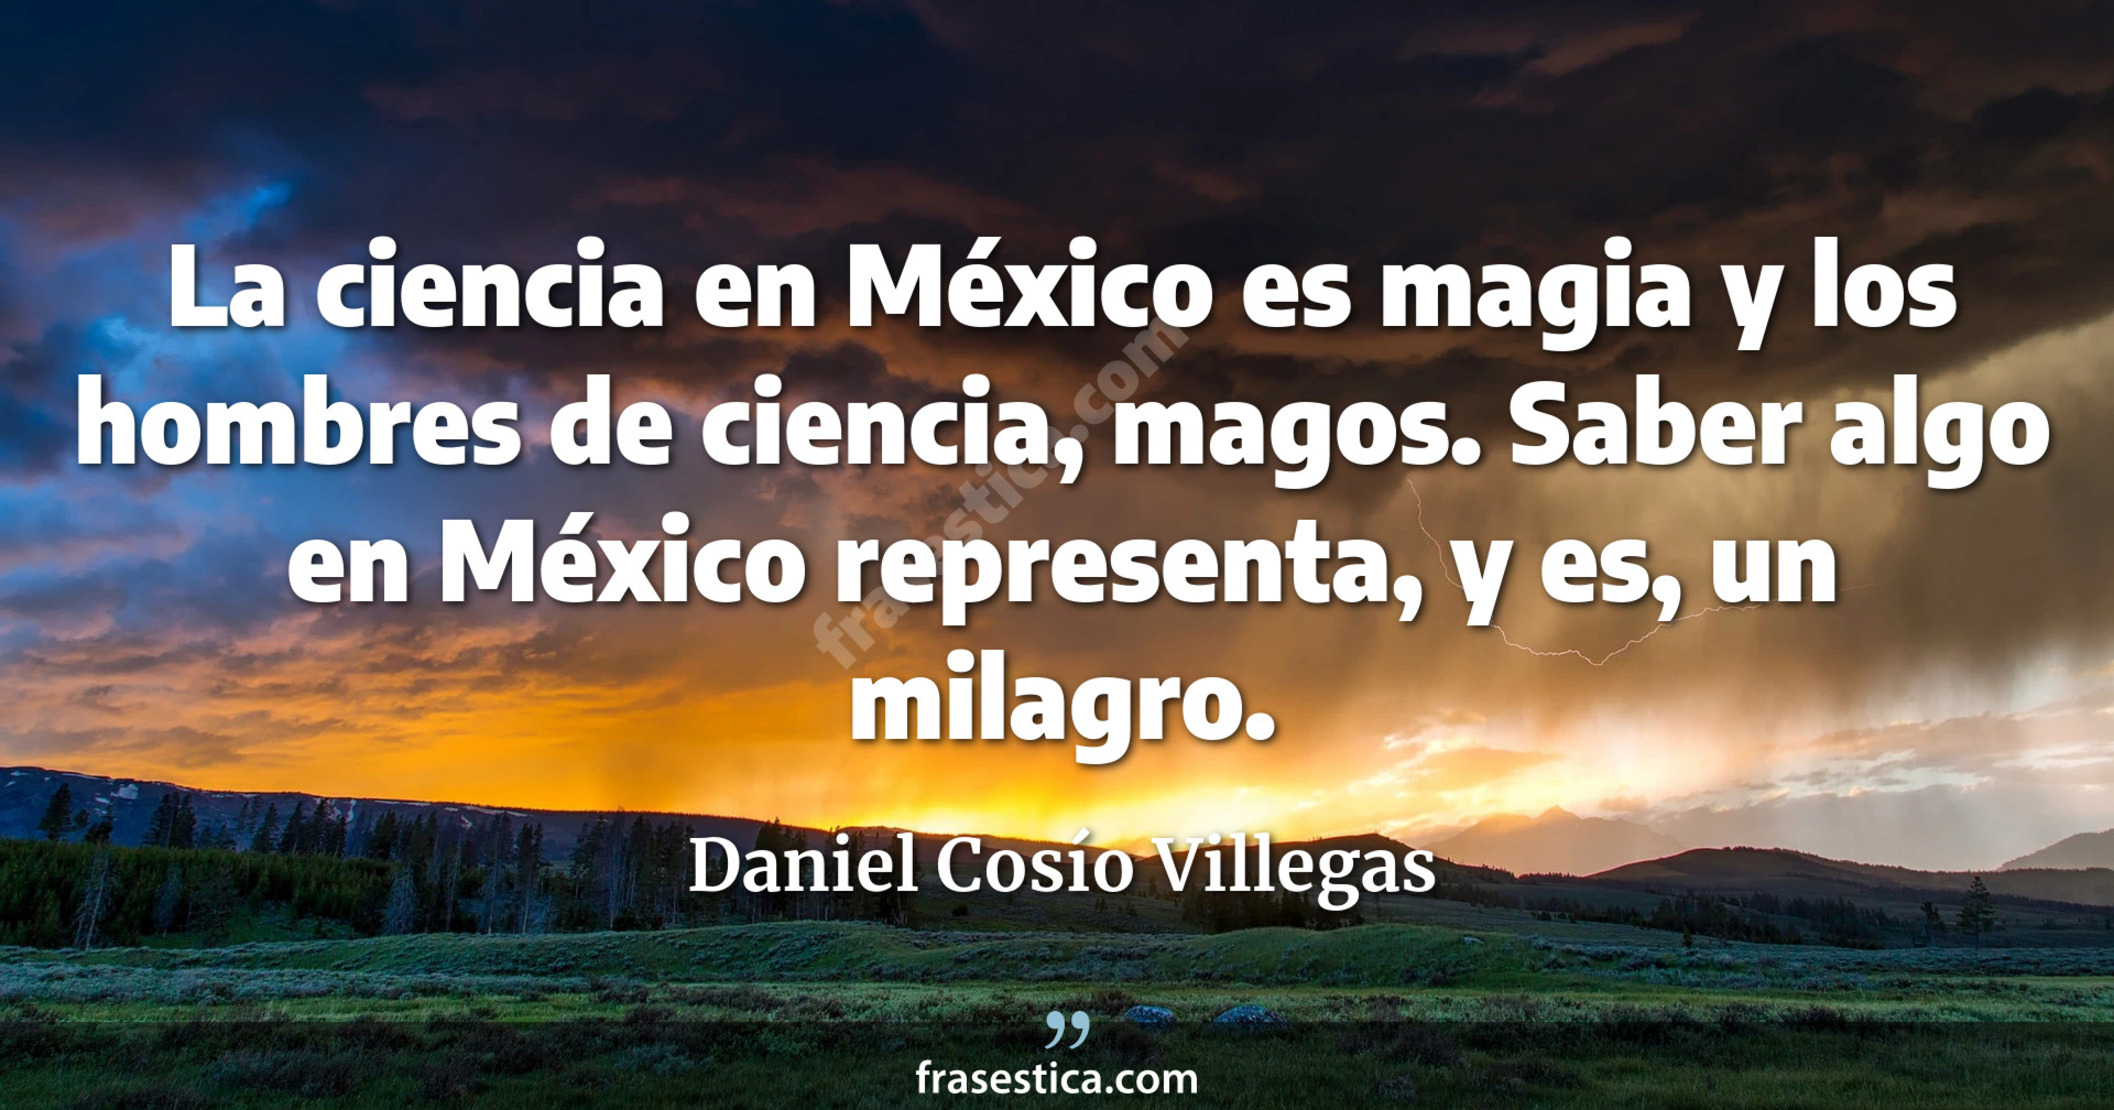 La ciencia en México es magia y los hombres de ciencia, magos. Saber algo en México representa, y es, un milagro. - Daniel Cosío Villegas